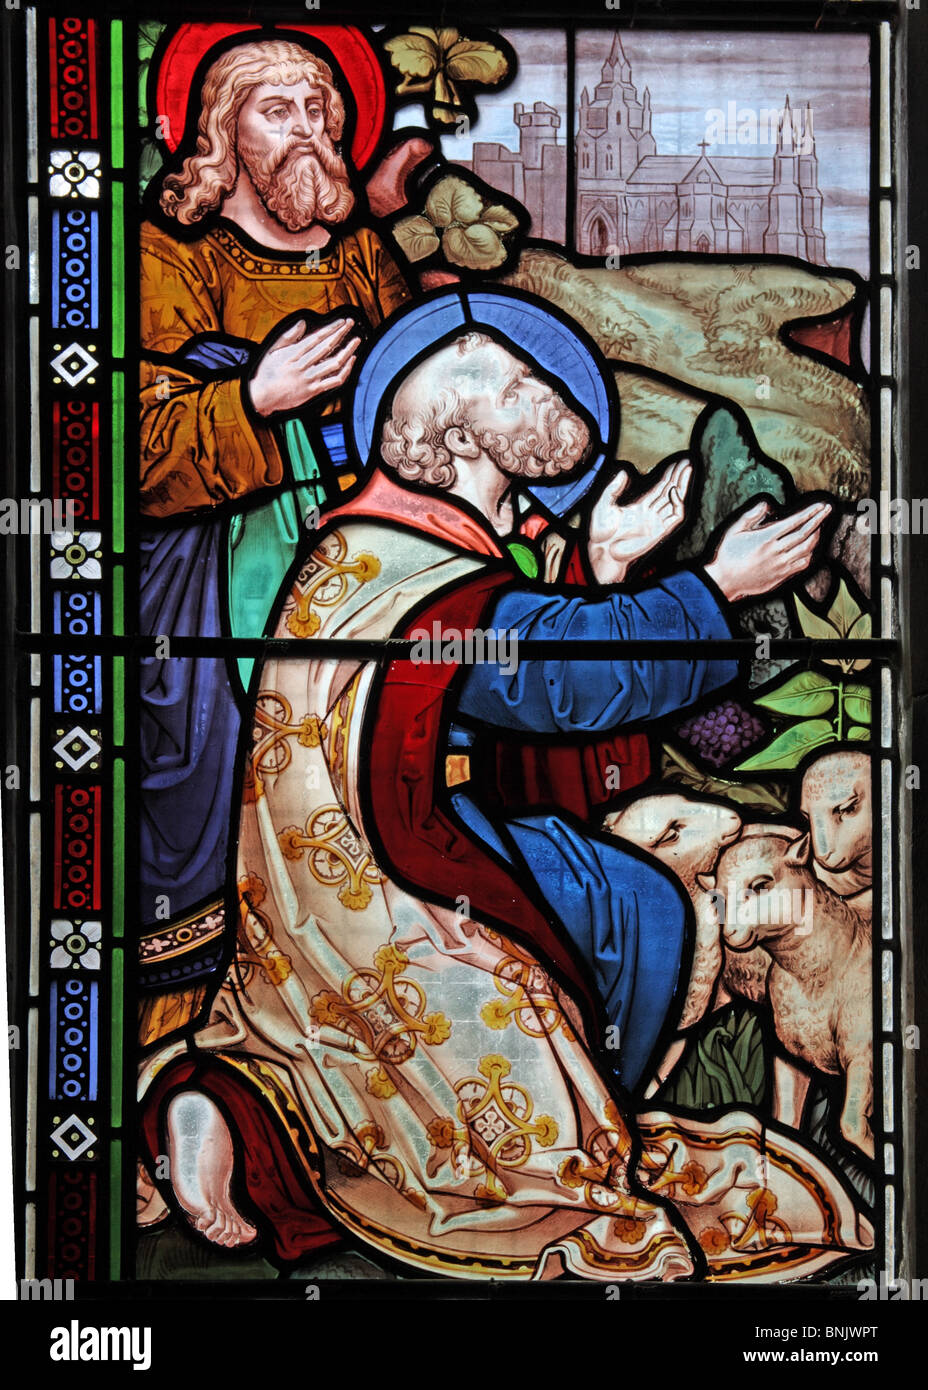 Une vitrelle de Frank Holt de Warwick représentant deux disciples, l'église Saint-Laurent, Lighthorne, Warwickshire, Angleterre Banque D'Images